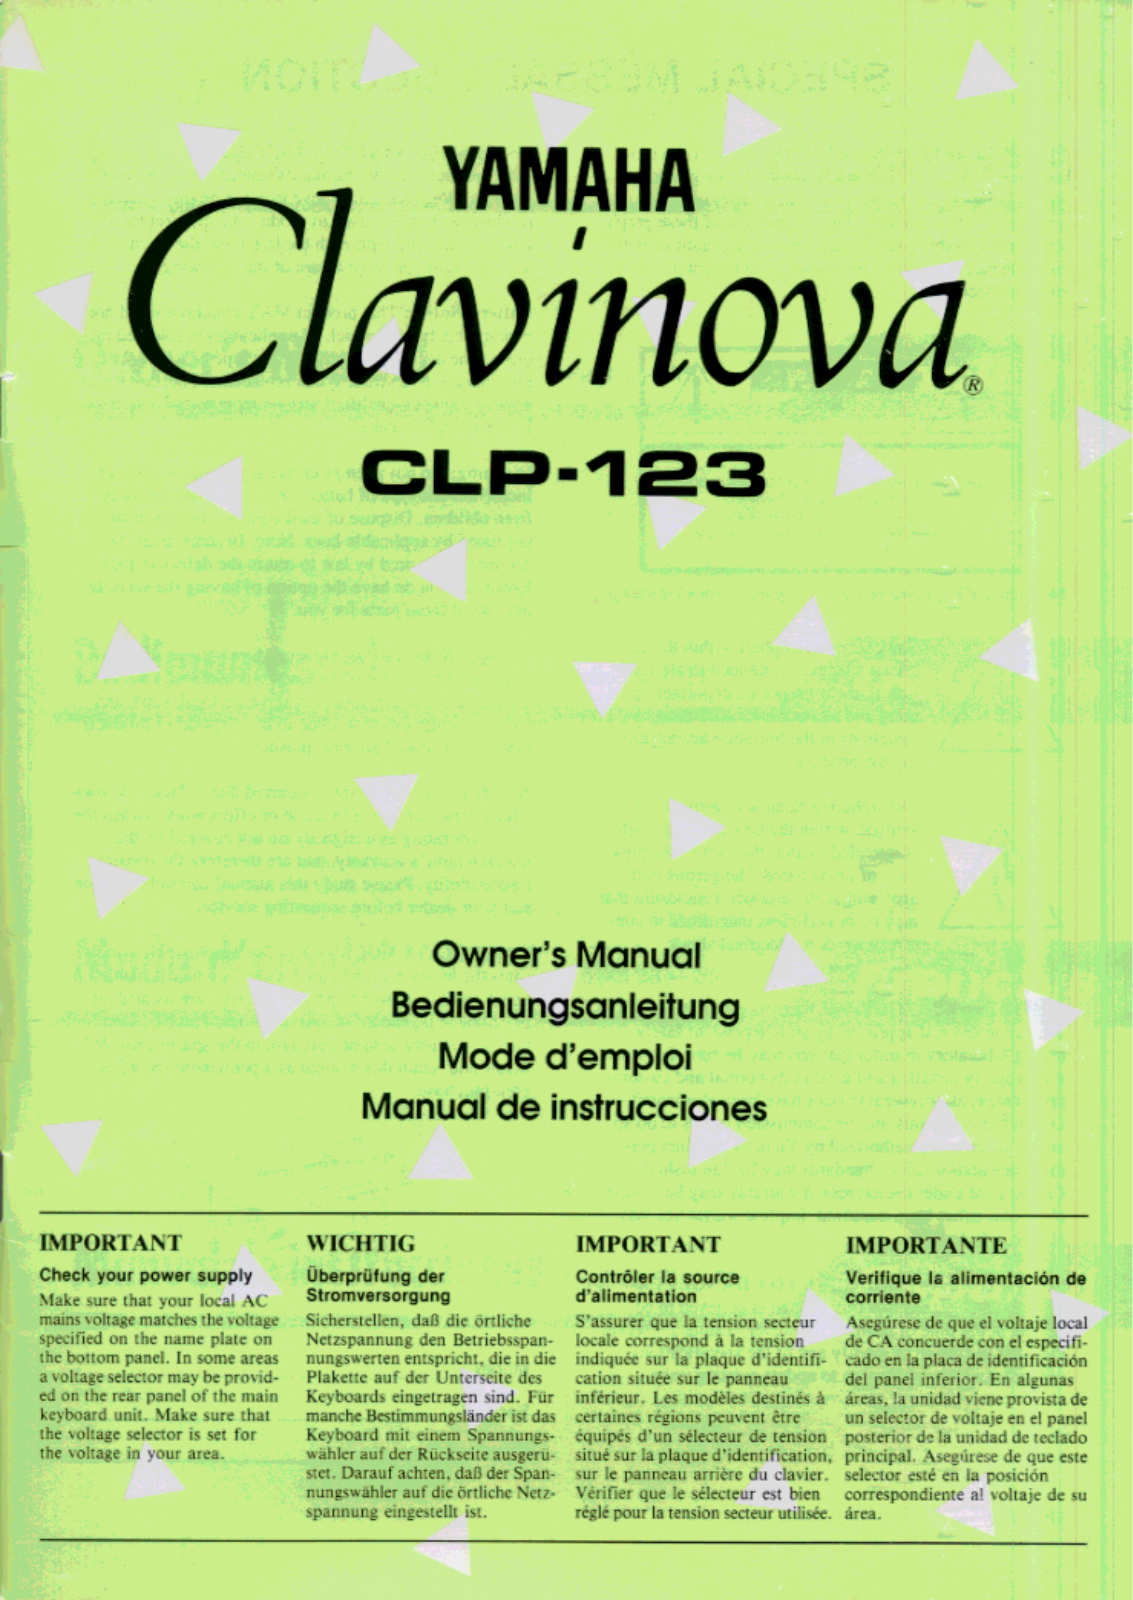 Yamaha CLP-123 User Manual